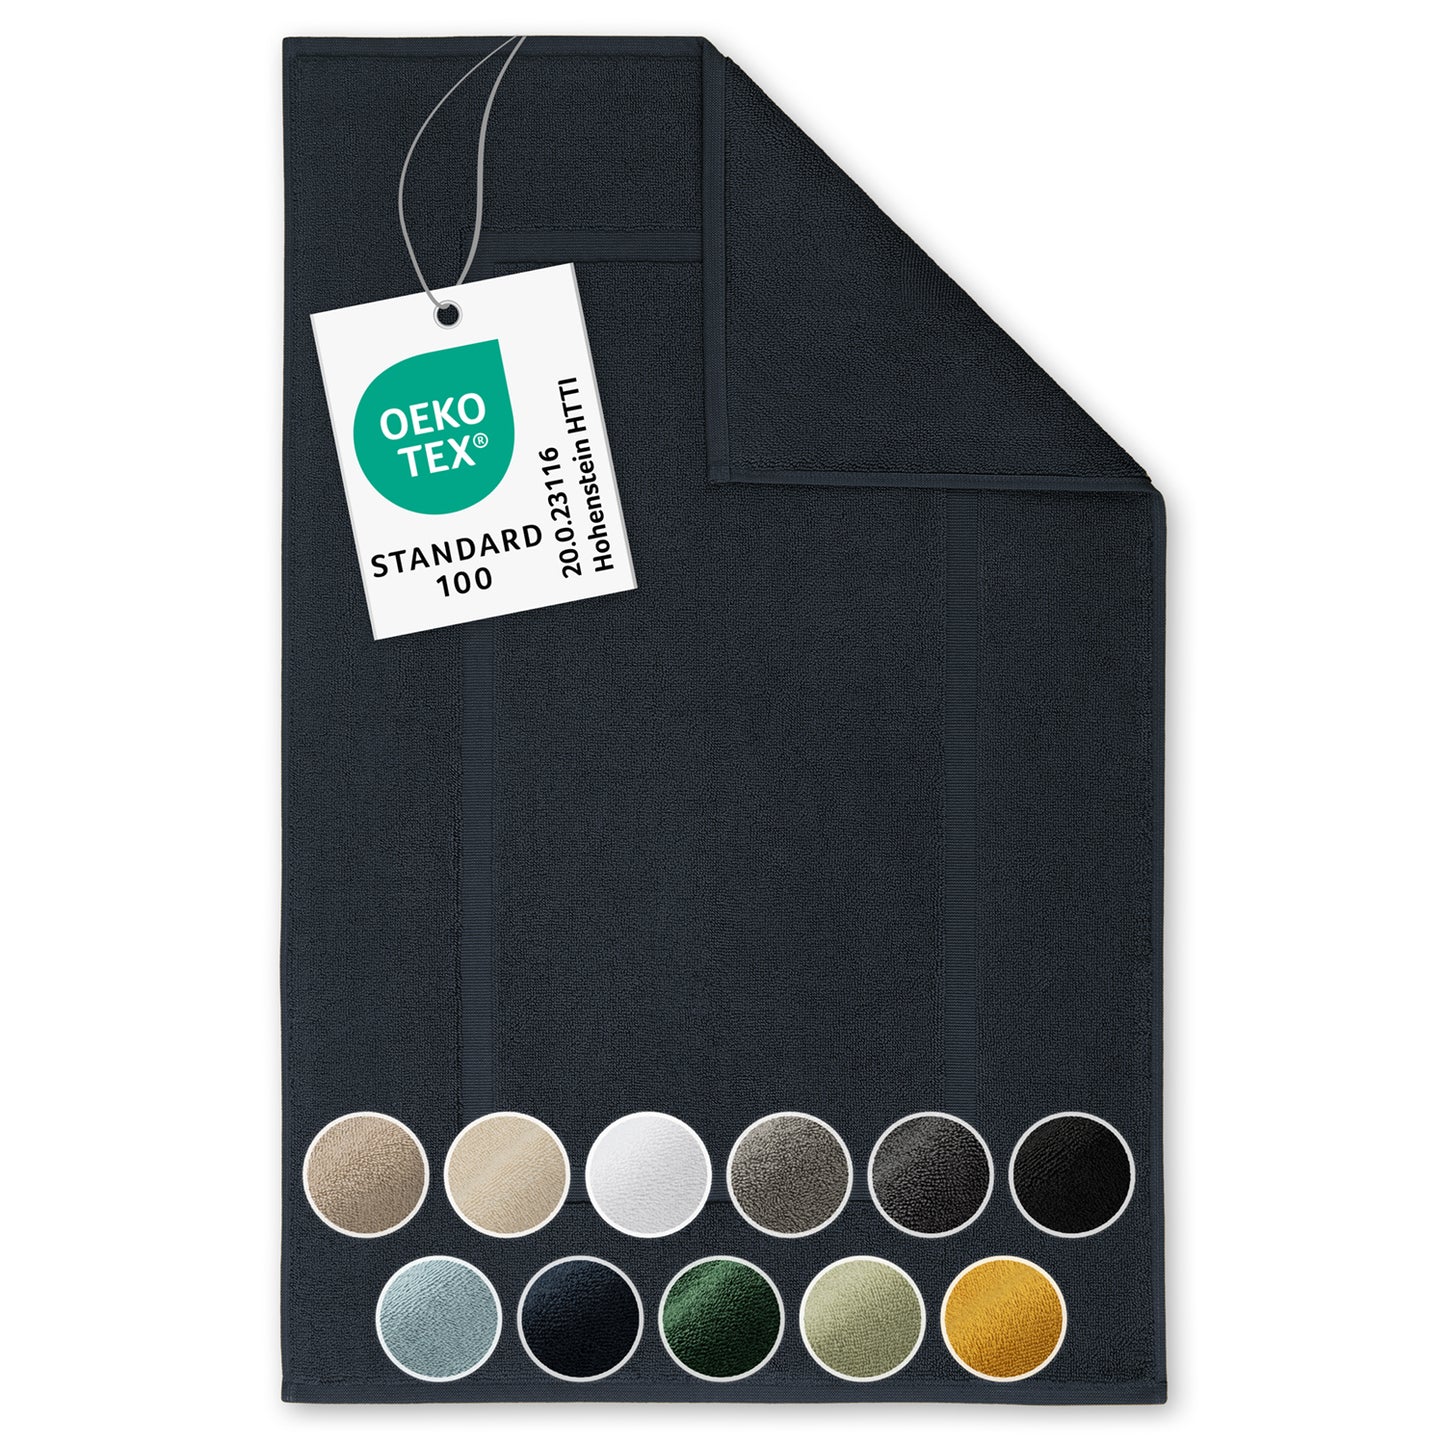 Dunkelblaues Handtuch mit Farboptionen und OEKO-TEX Label.